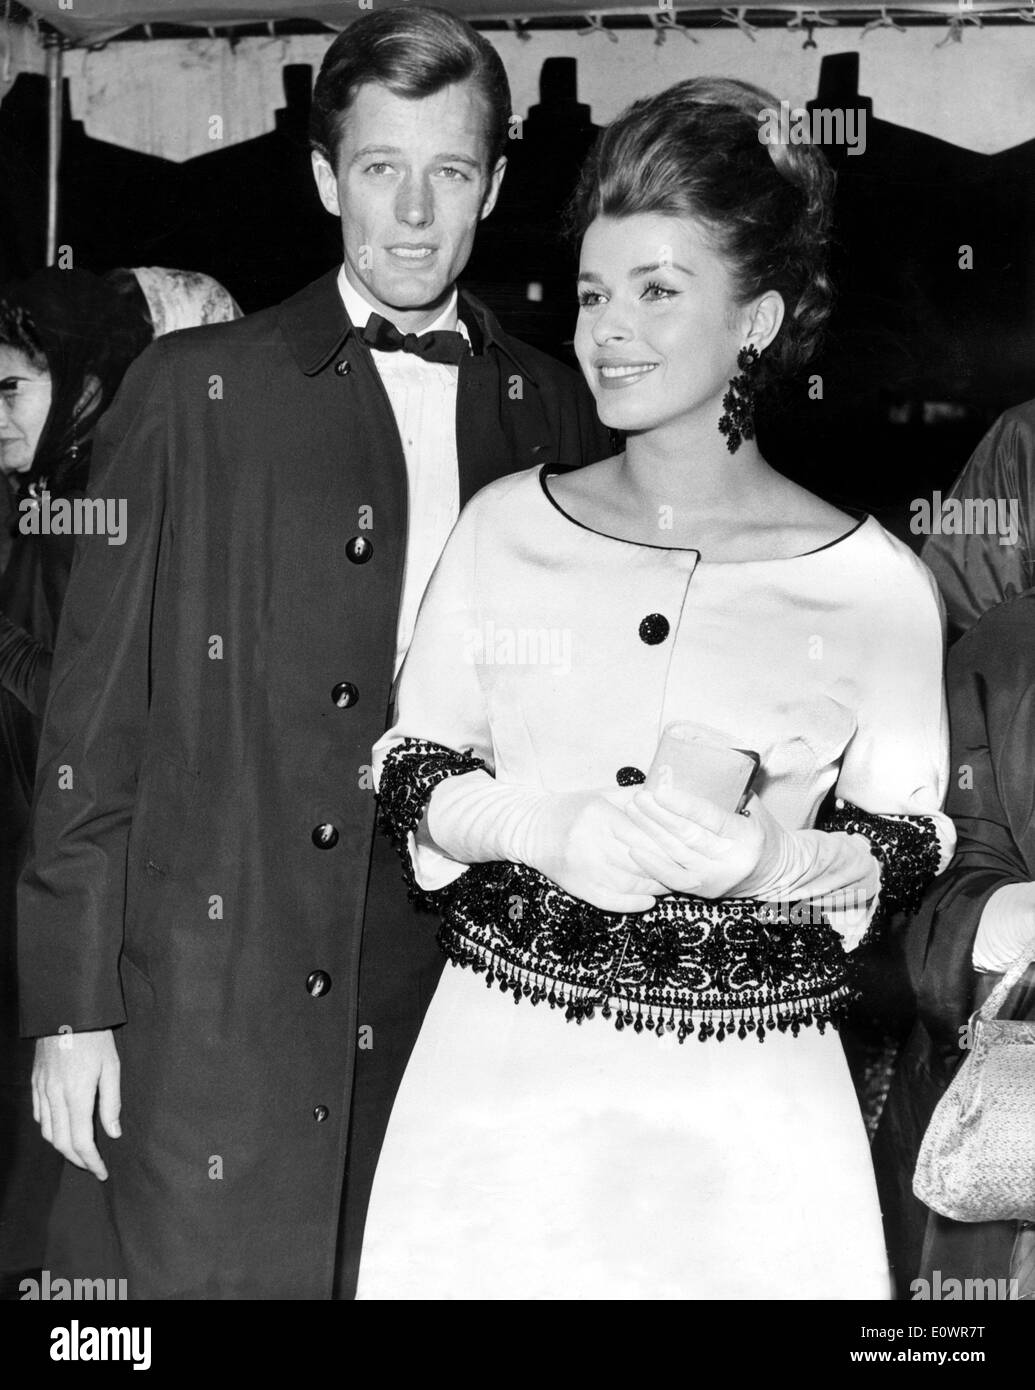 Actors Peter Fonda and Senta Berger at premiere Stock Photo